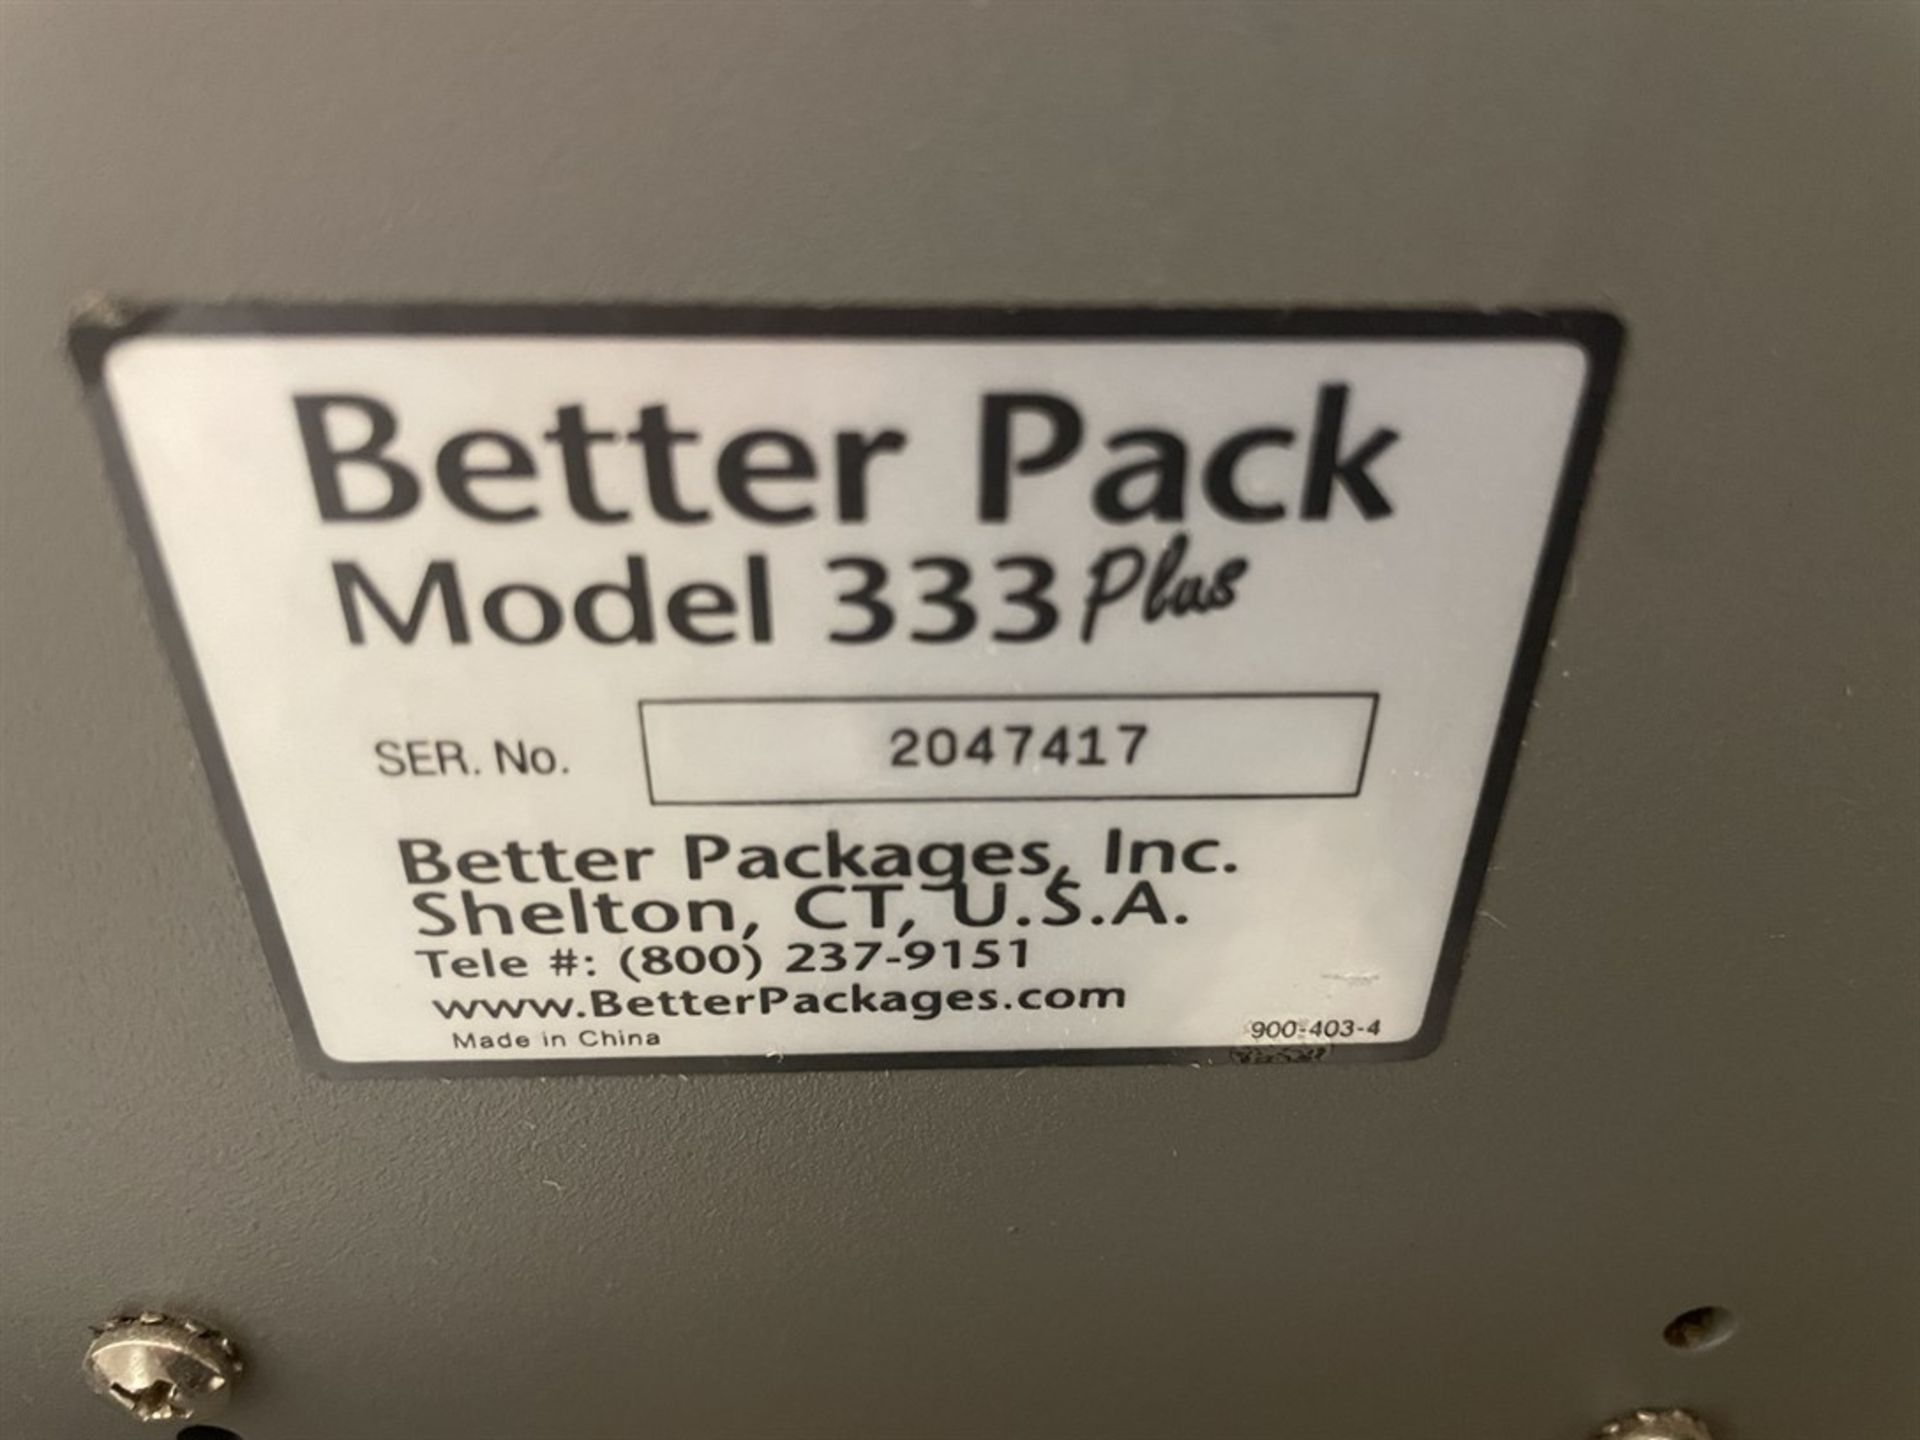 Better Pack 333 Plus Tape dispenser. s/n 2047417 - Image 2 of 2